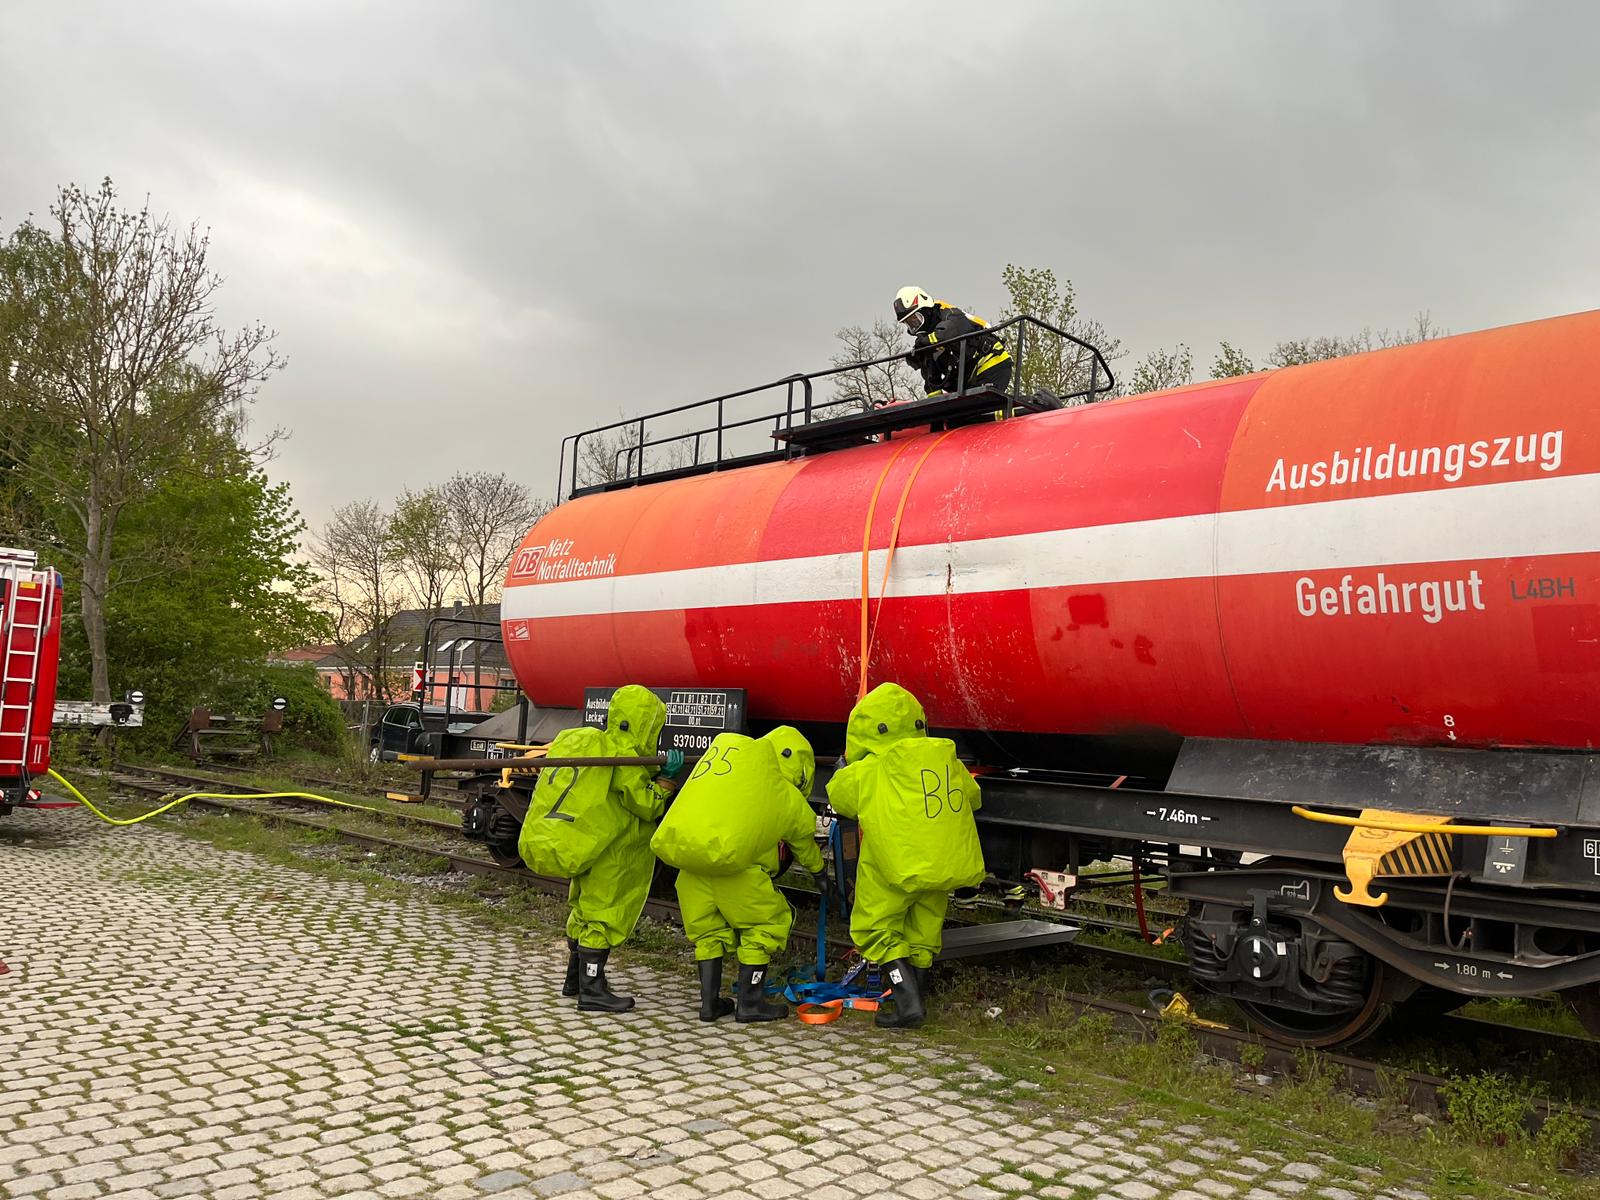 Die Feuerwehrler in Schutzausrüstung beim Training am Ausbildungszug der Deutschen Bahn.